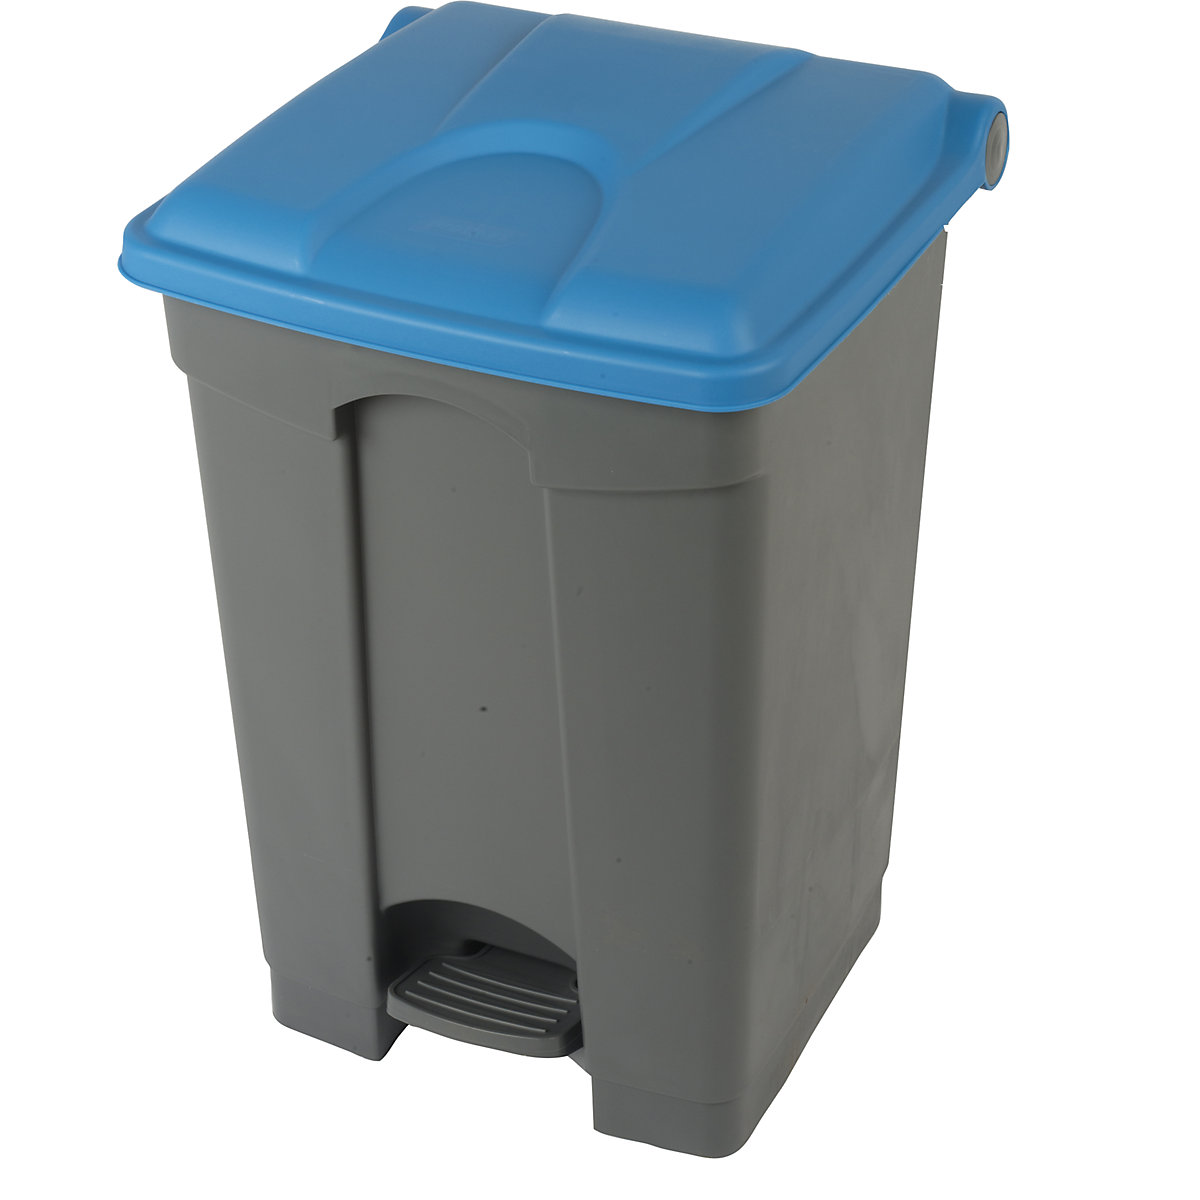 Spremnik za otpad s papučicom, volumen 45 l, ŠxVxD 410 x 600 x 400 mm, u sivoj boji, poklopac u plavoj boji-11